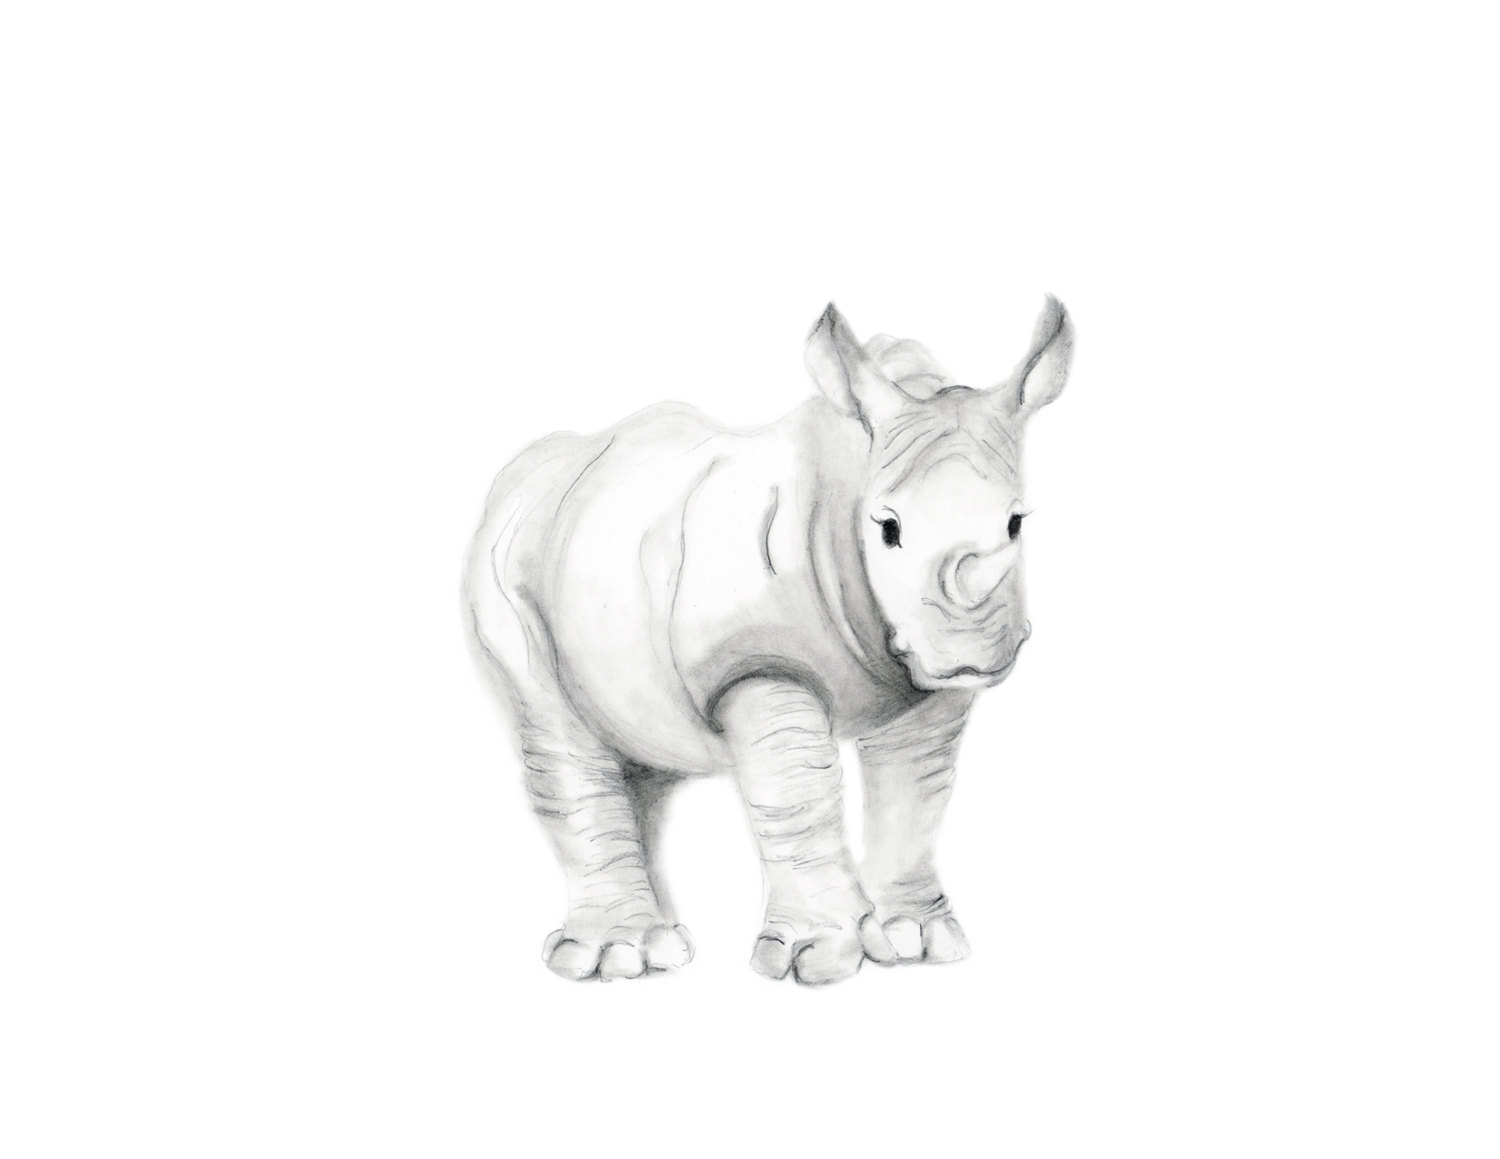 Rhino Pencil Drawing